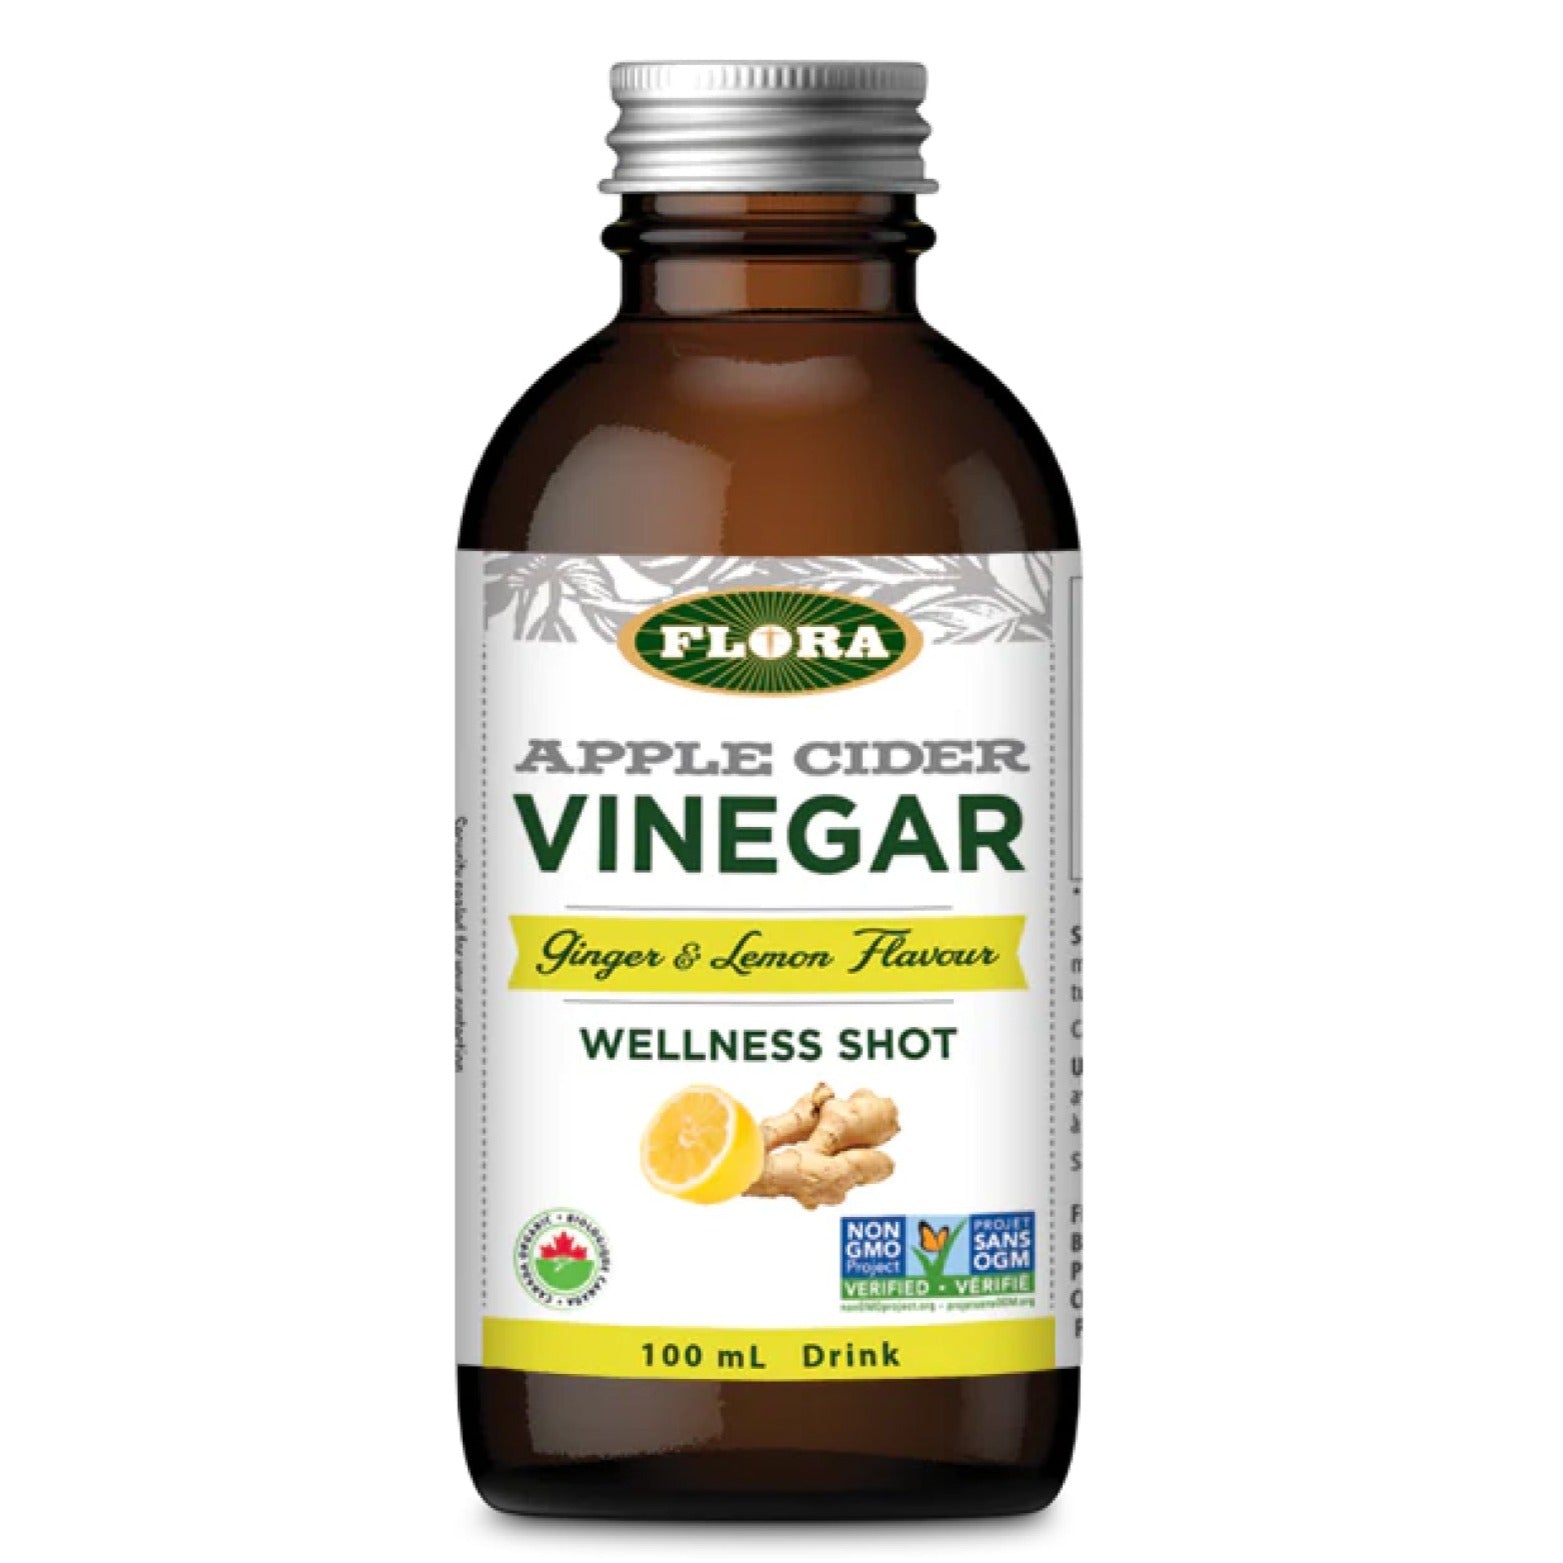 Flora Organic Apple Cider Vinegar Wellness Shot - Ginger & Lemon 100ml